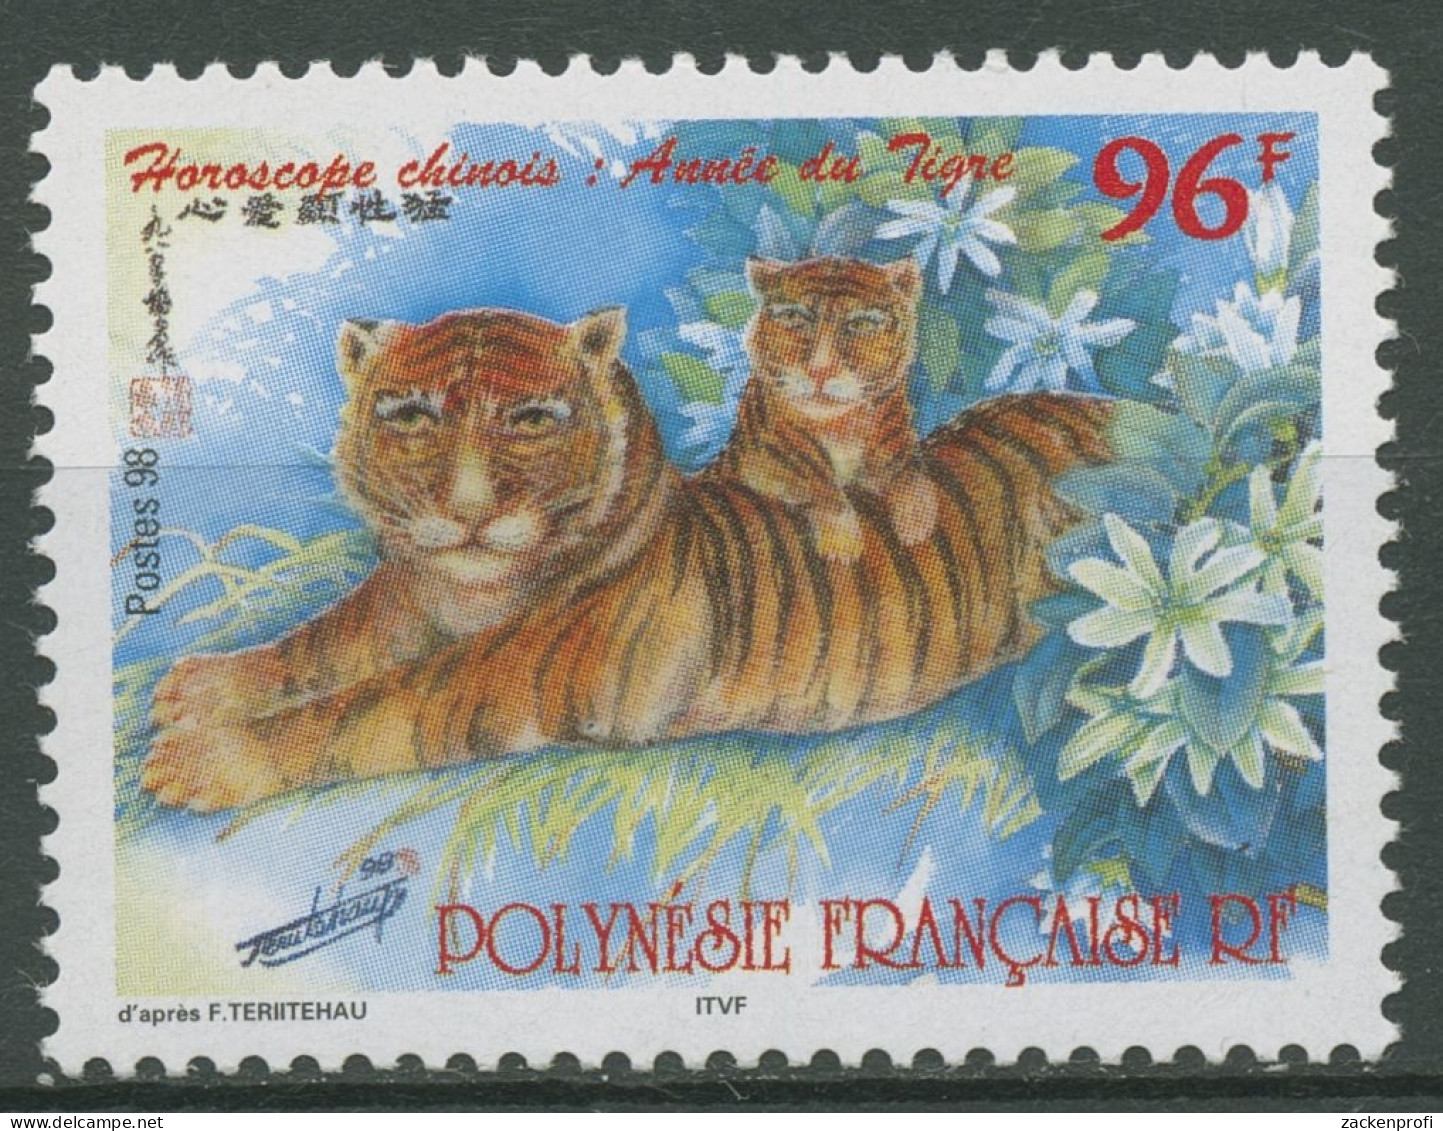 Französisch-Polynesien 1998 Chin. Neujahr Jahr Des Tigers 755 Postfrisch - Ungebraucht